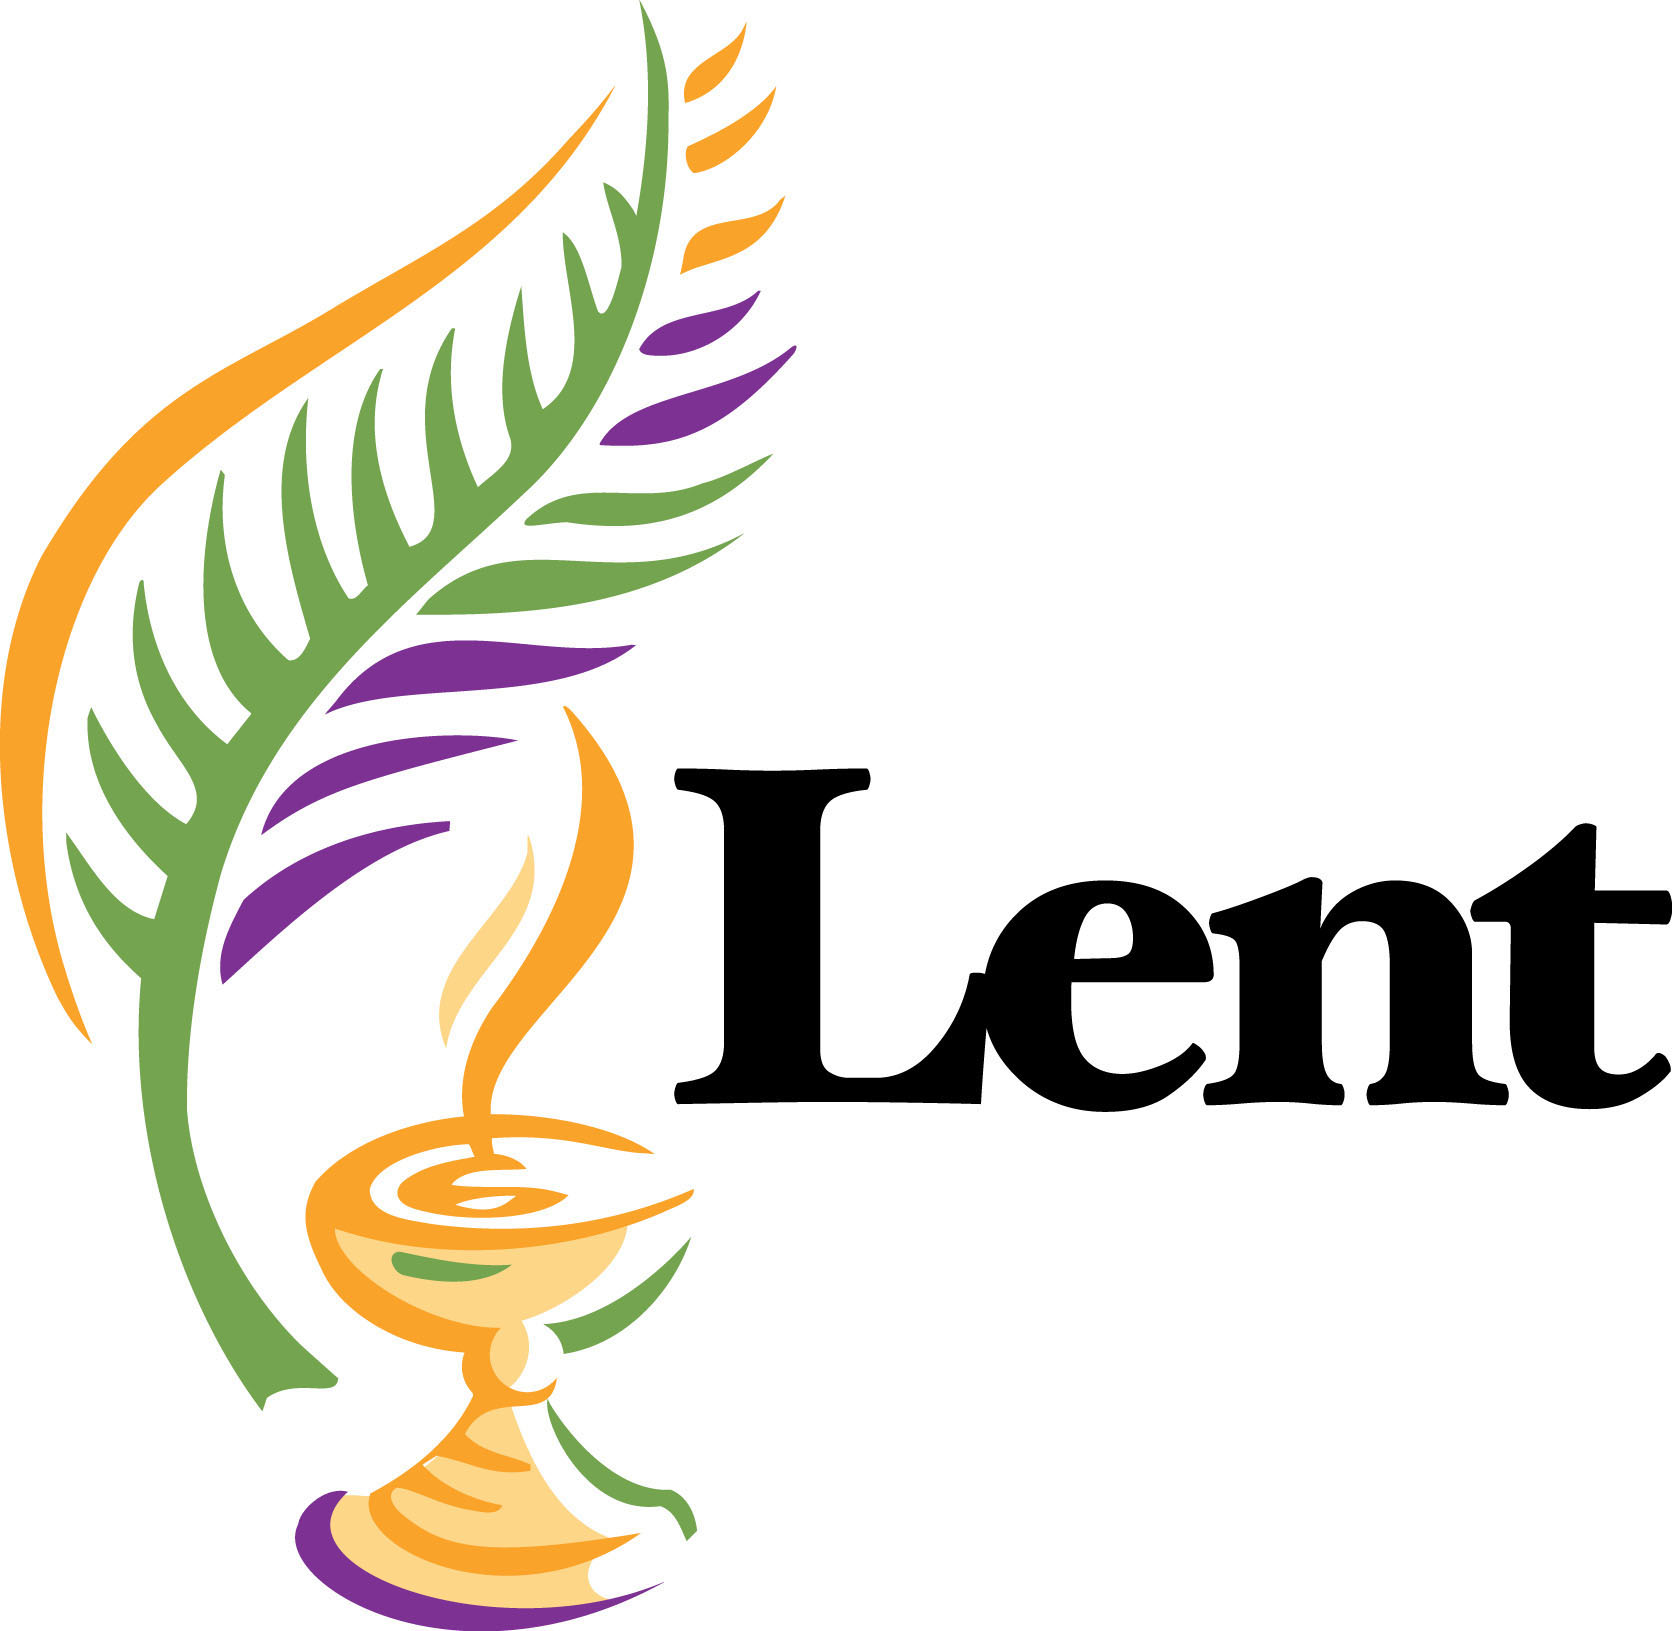 Bulletin for Lent Clipart